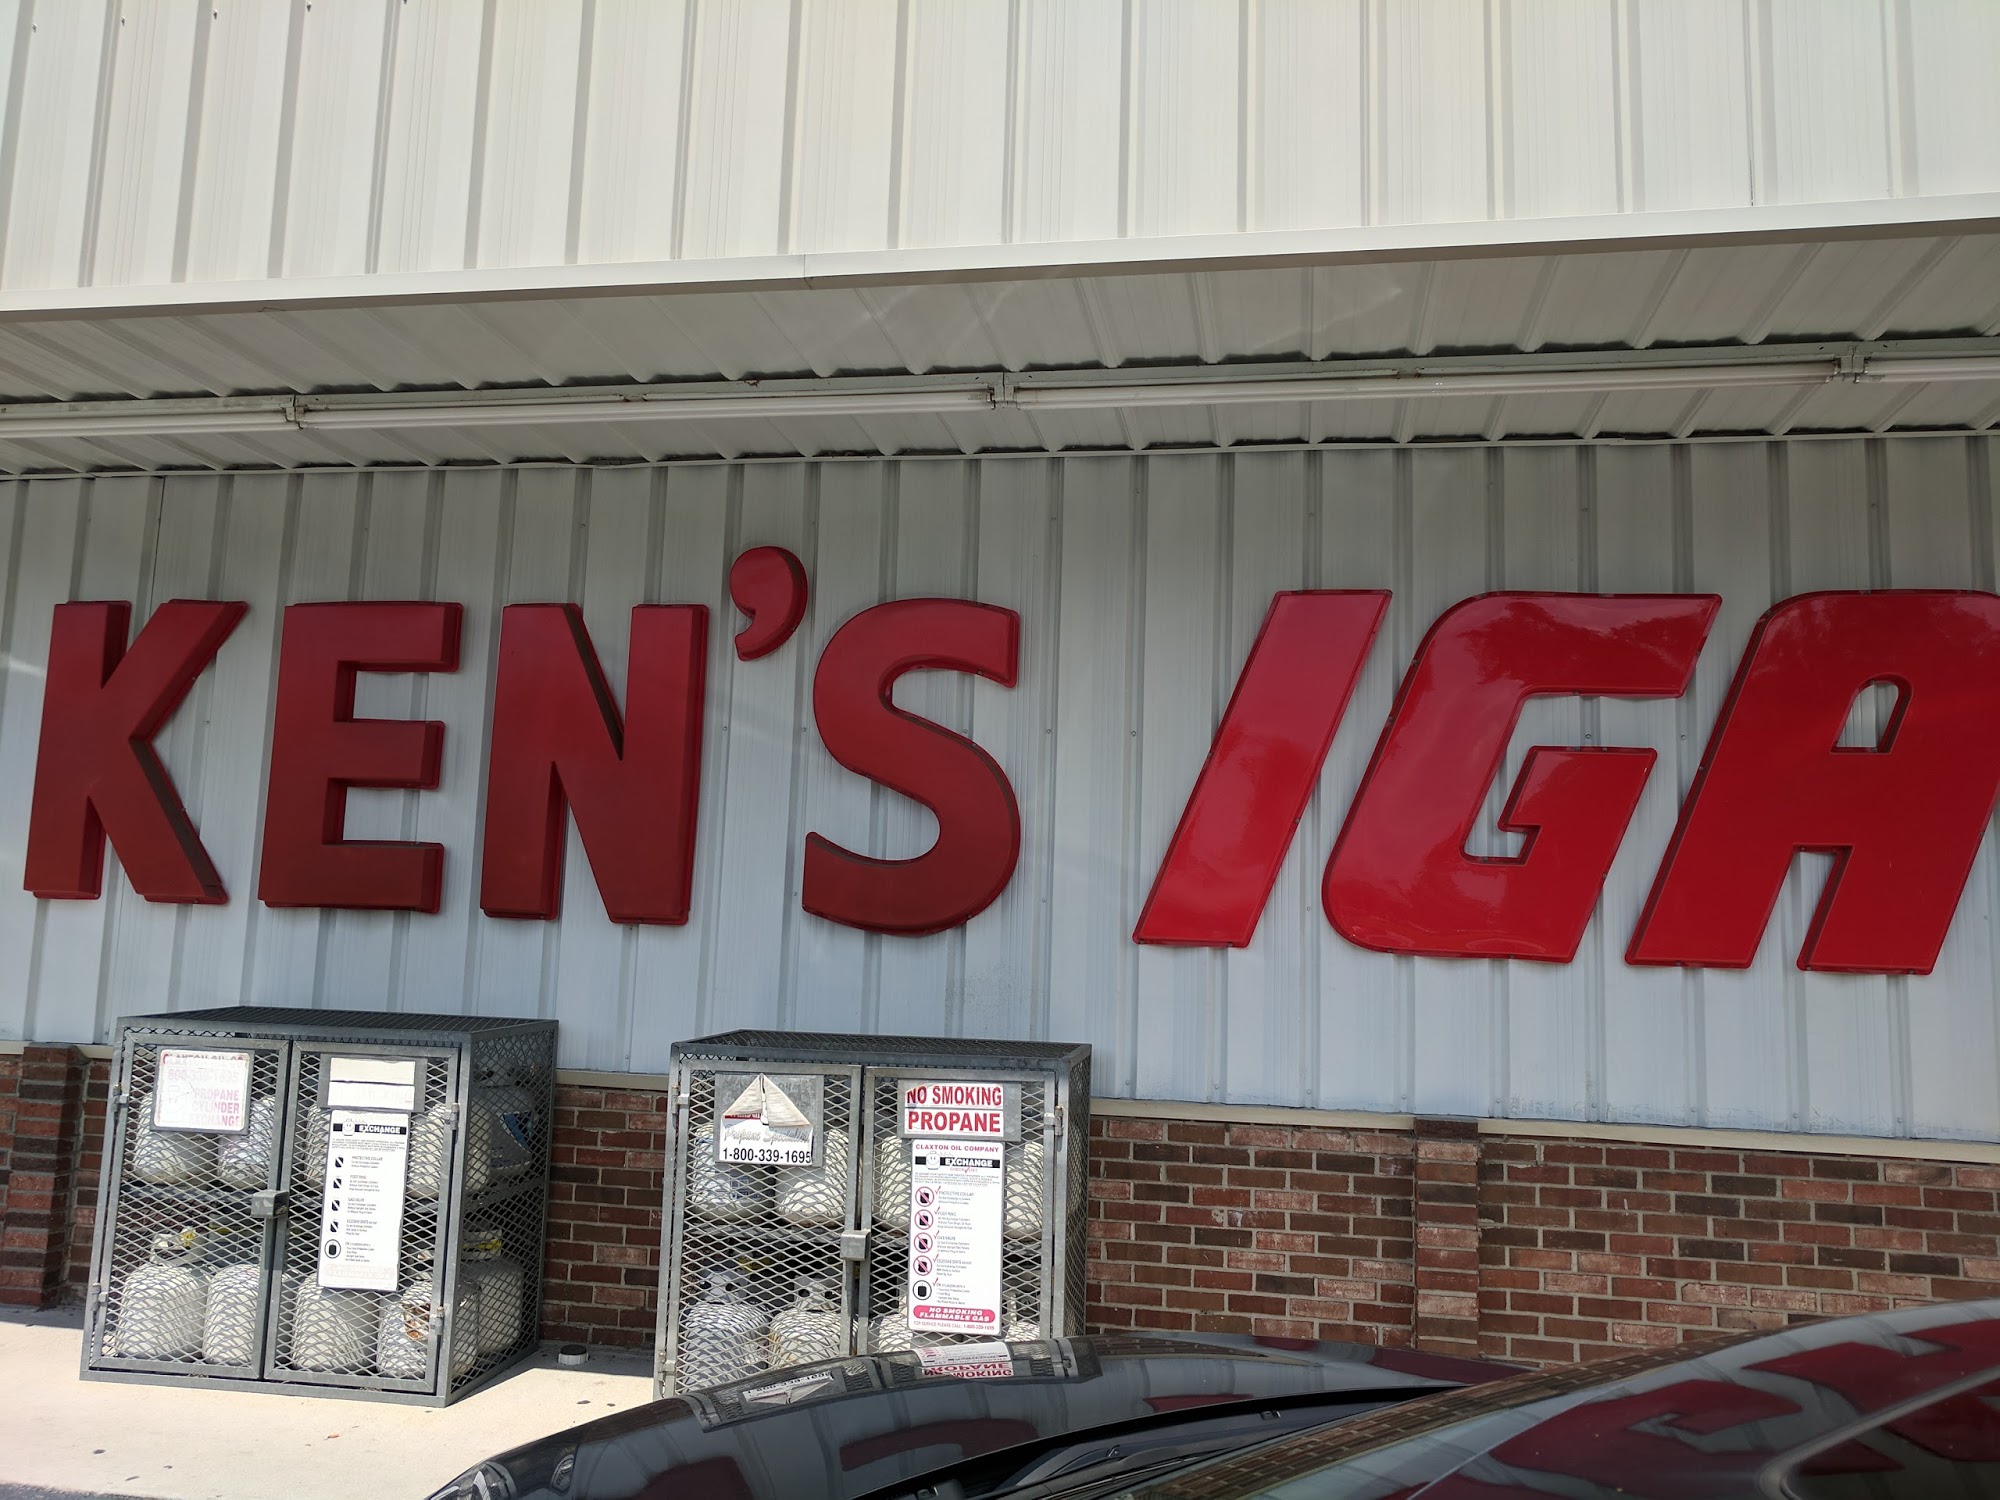 Ken's IGA